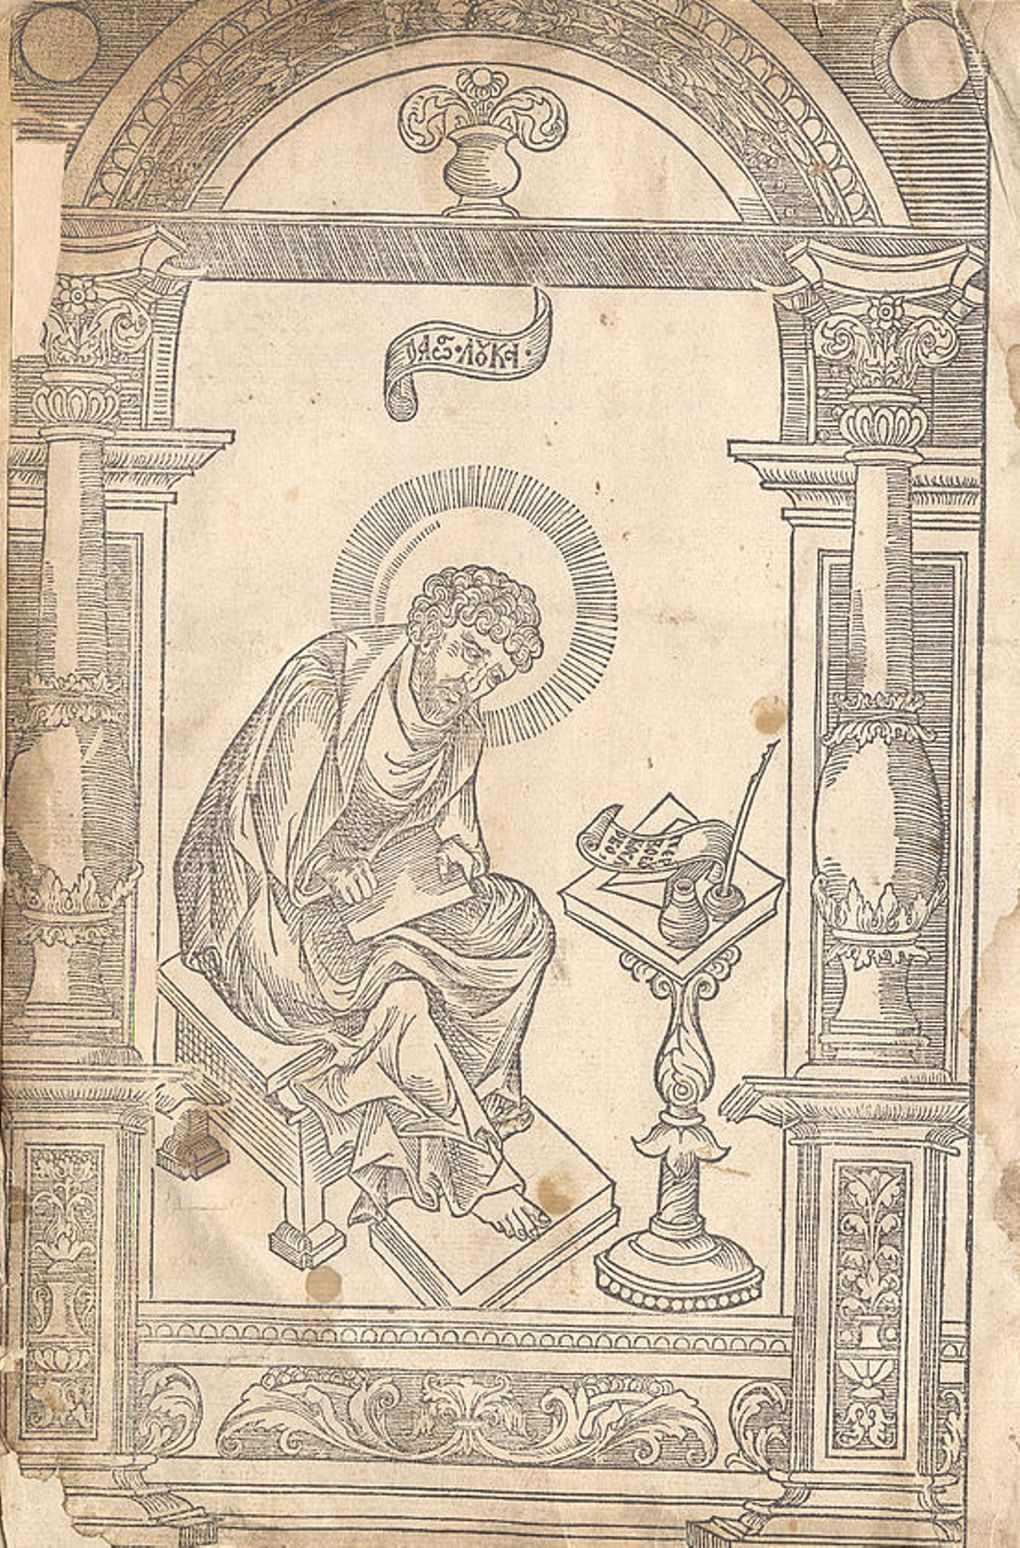 Иллюстрация к книге «Апостол». Гравированный фронтиспис, Евангелист Лука в арке на двух колоннах.